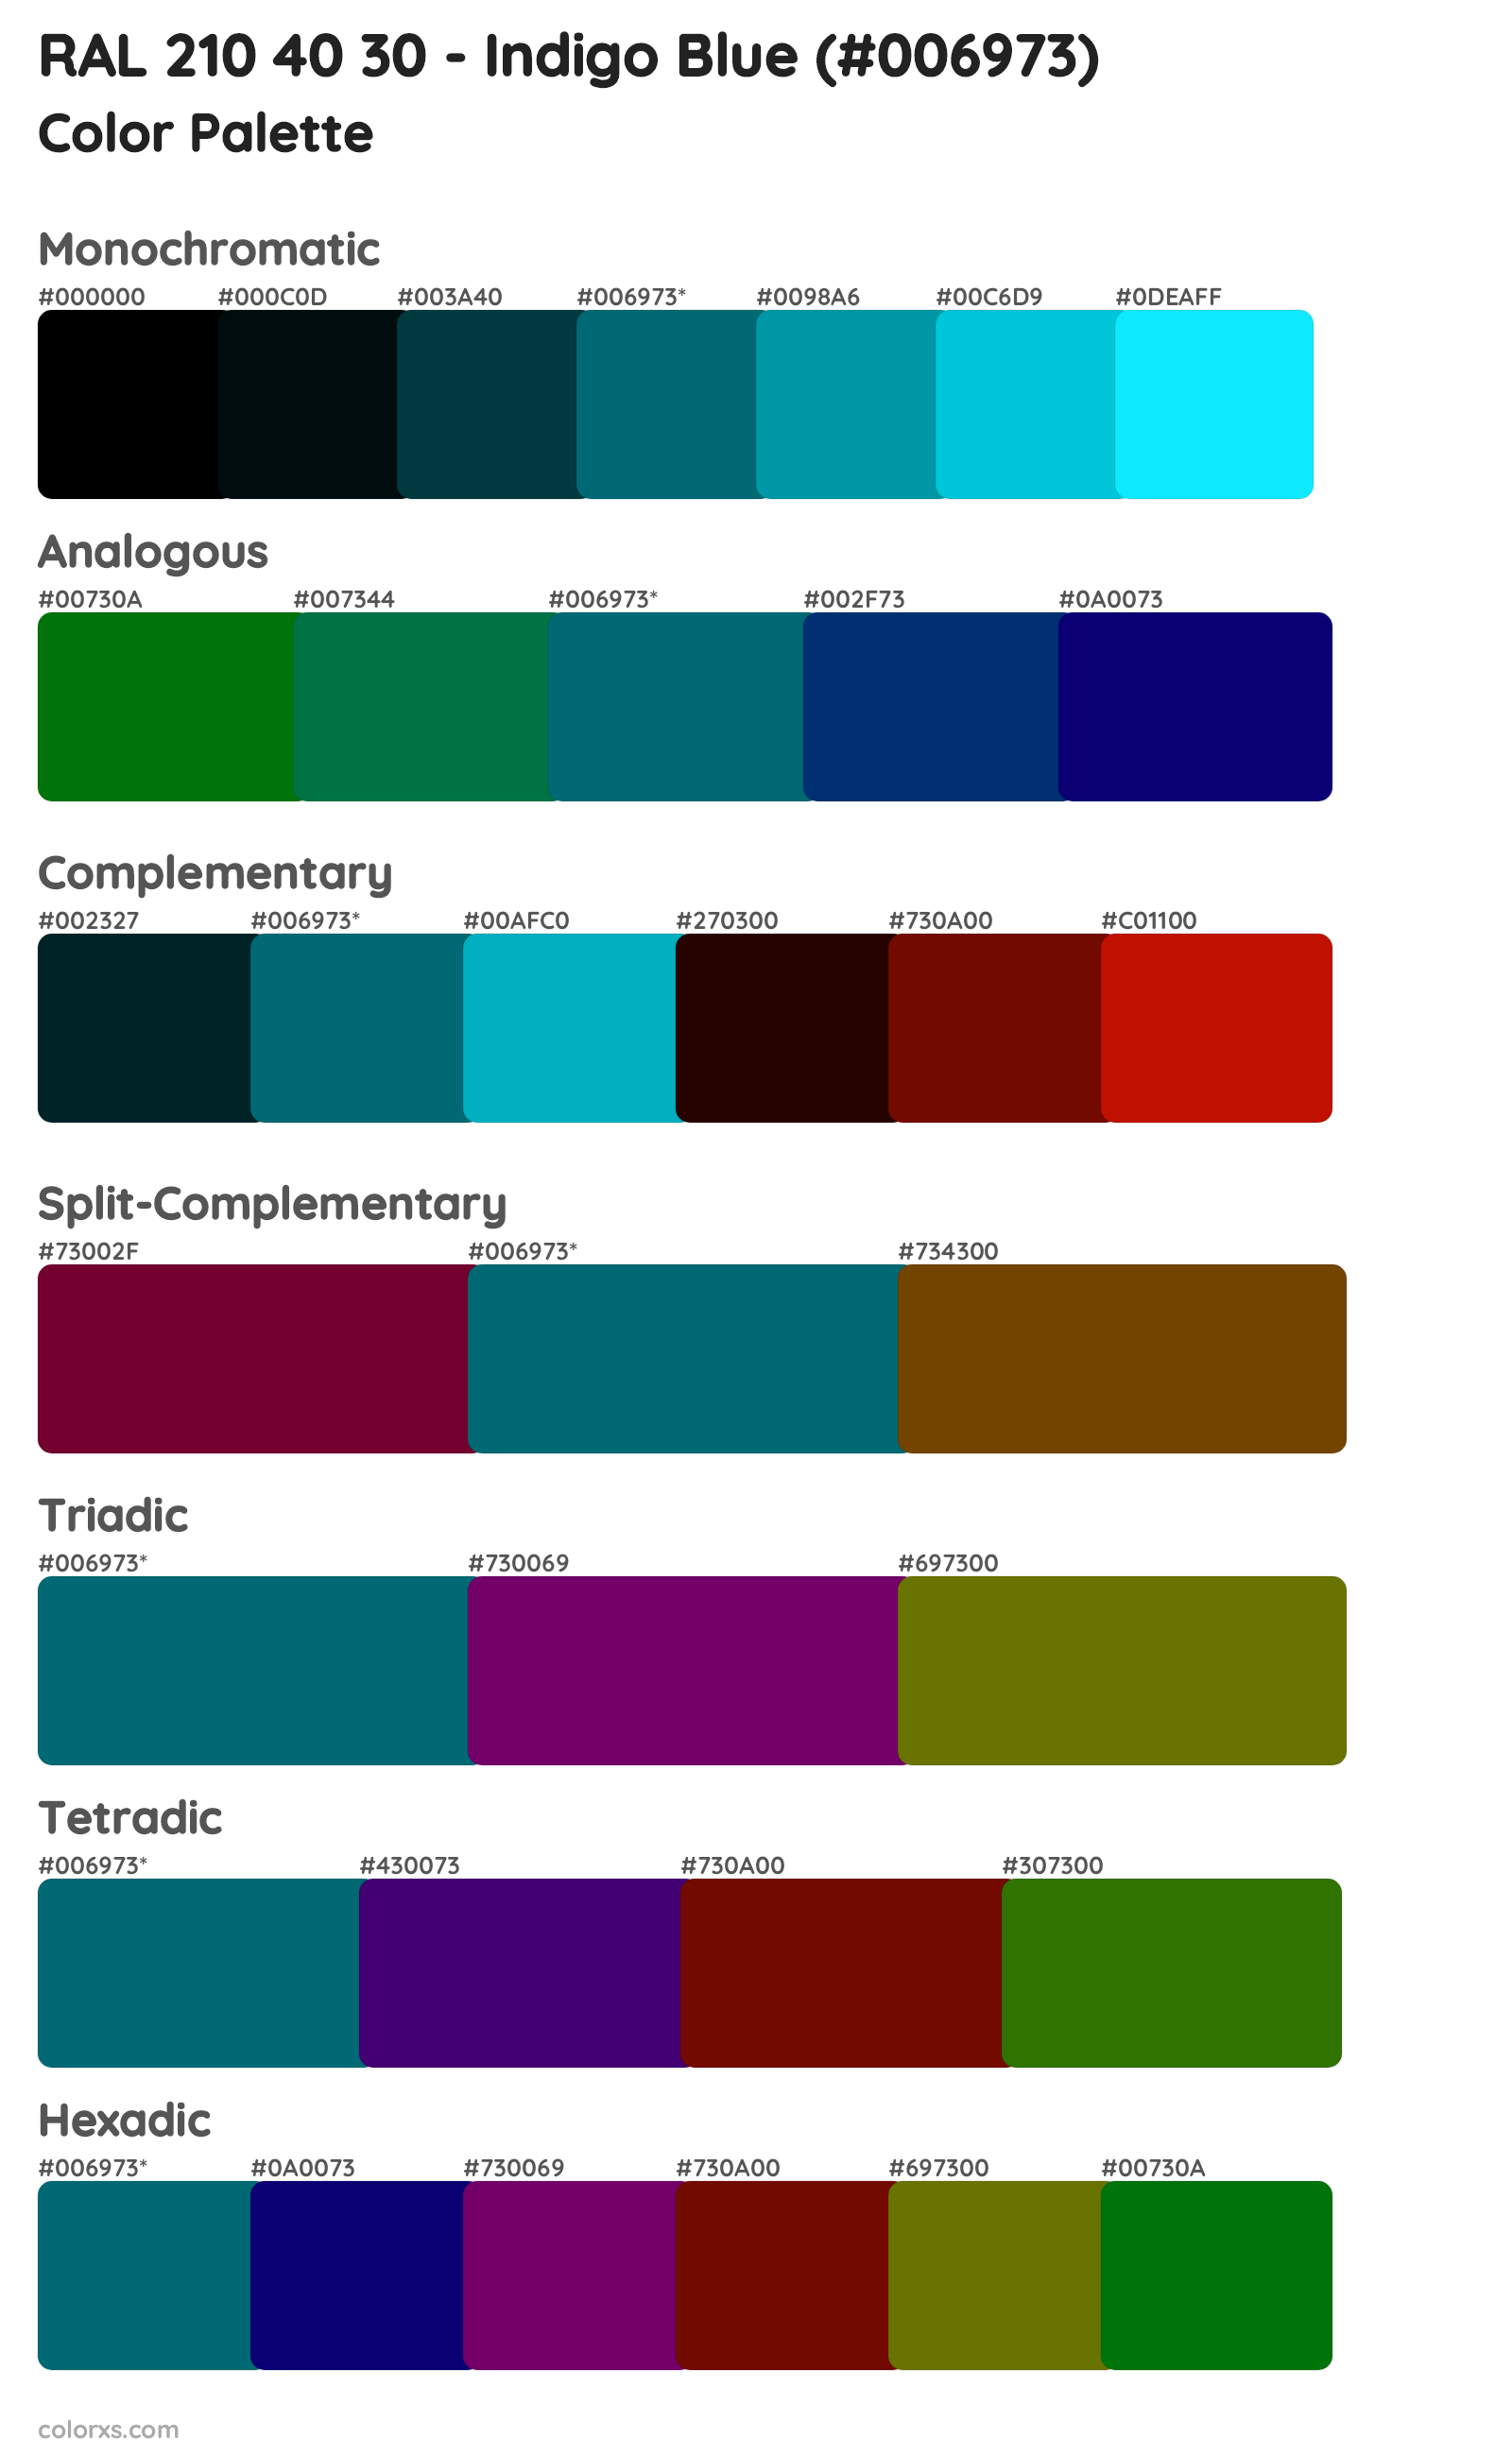 RAL 210 40 30 - Indigo Blue Color Scheme Palettes